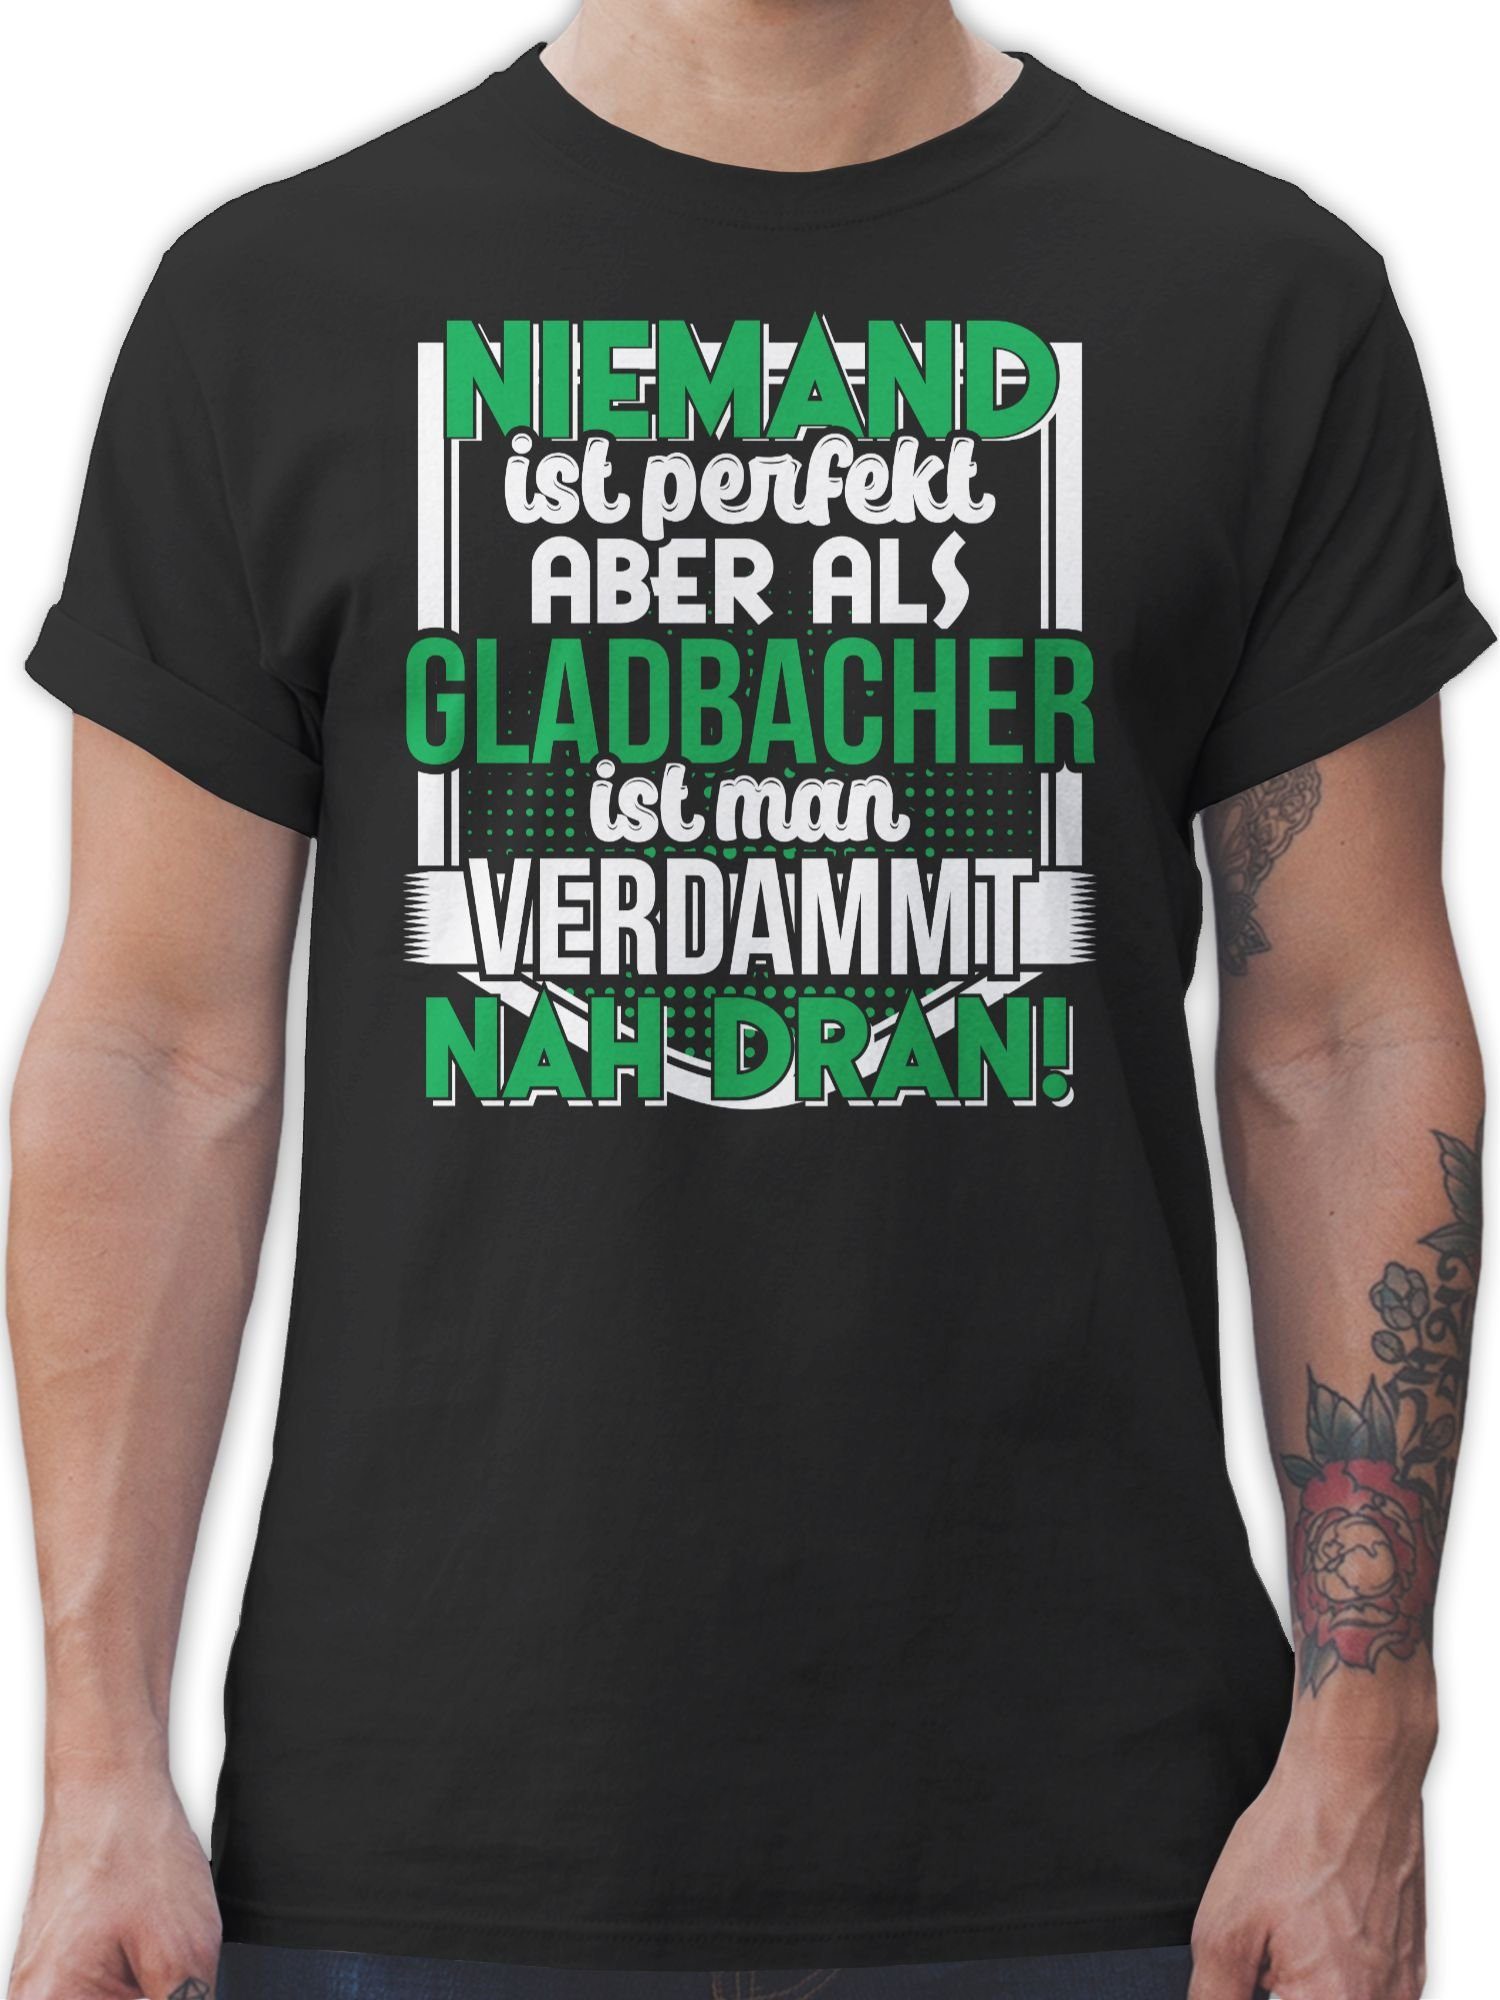 T-Shirt Outfit und Stadt Niemand Gladbacher Shirtracer perfekt 01 ist Schwarz City